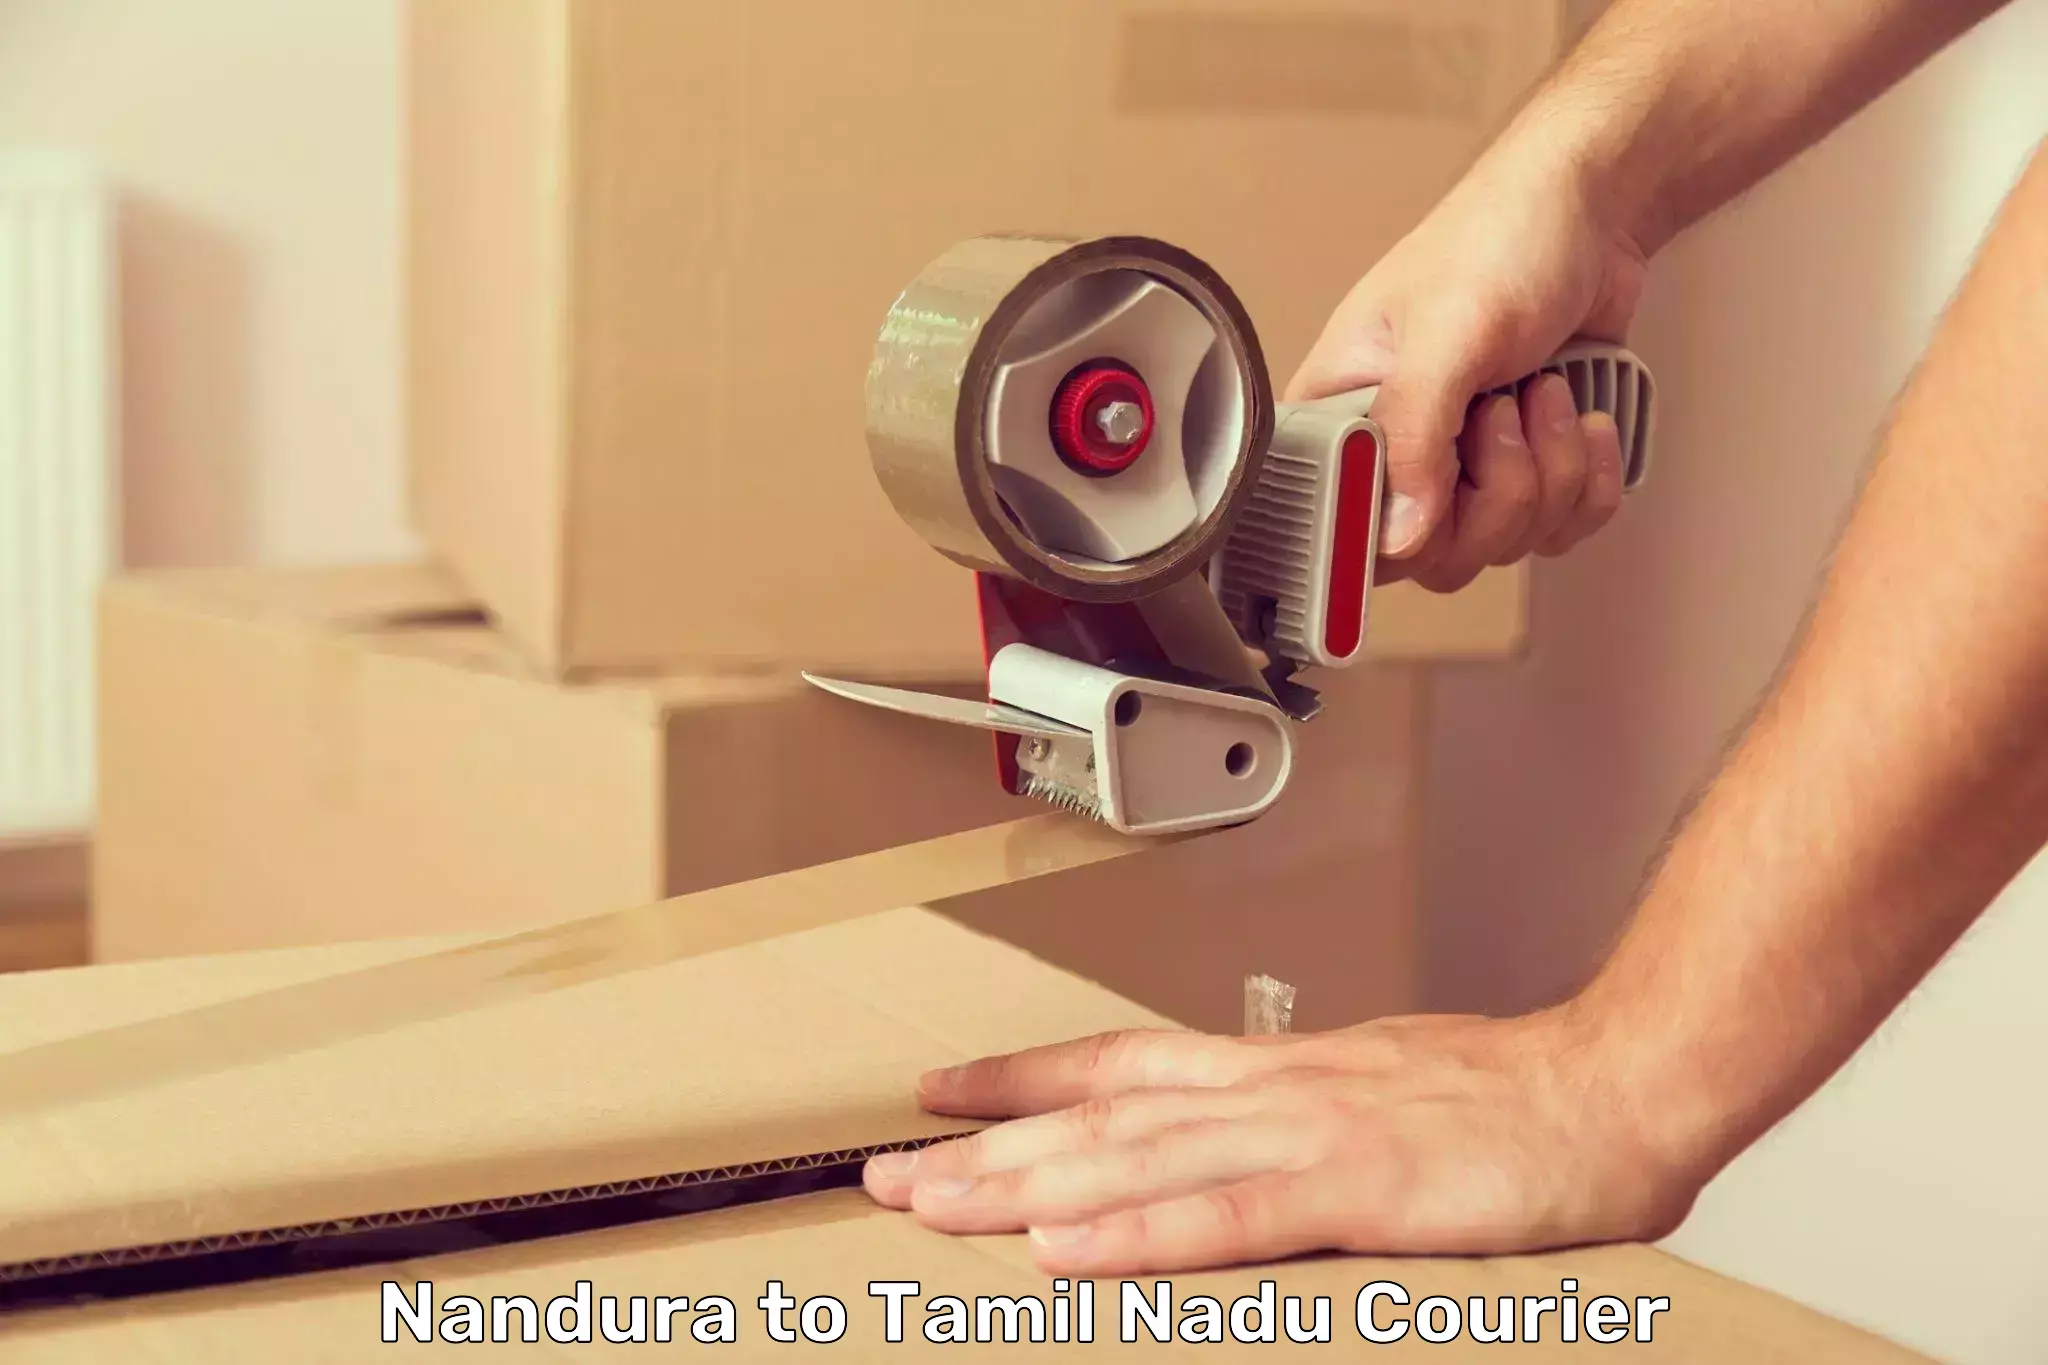 Custom courier packaging Nandura to Tiruchirappalli